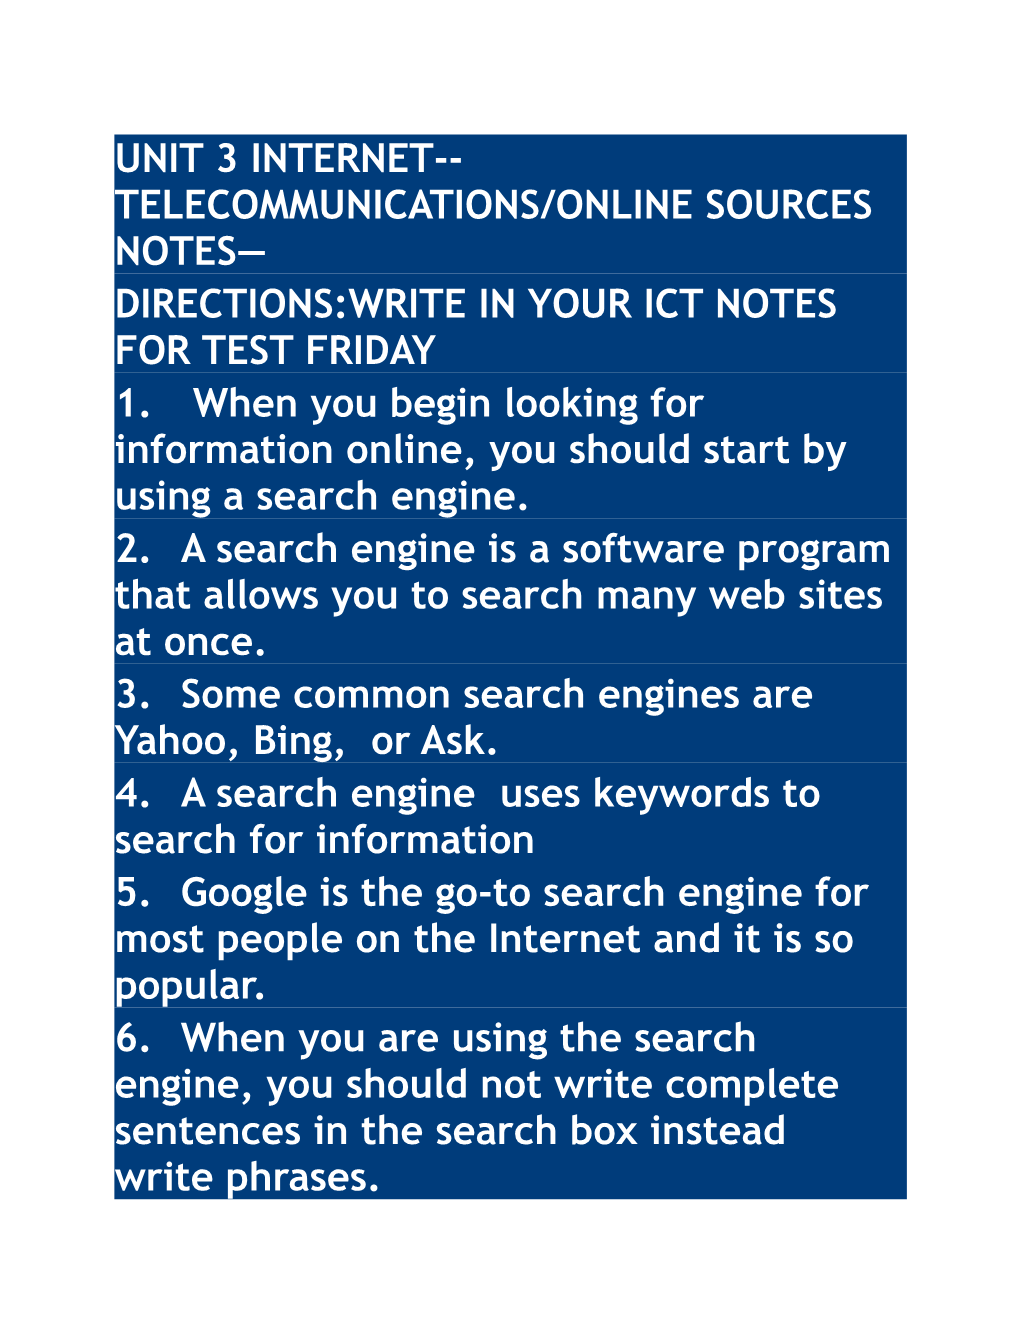 Unit 3 Internet Telecommunications/Online Sources Notes